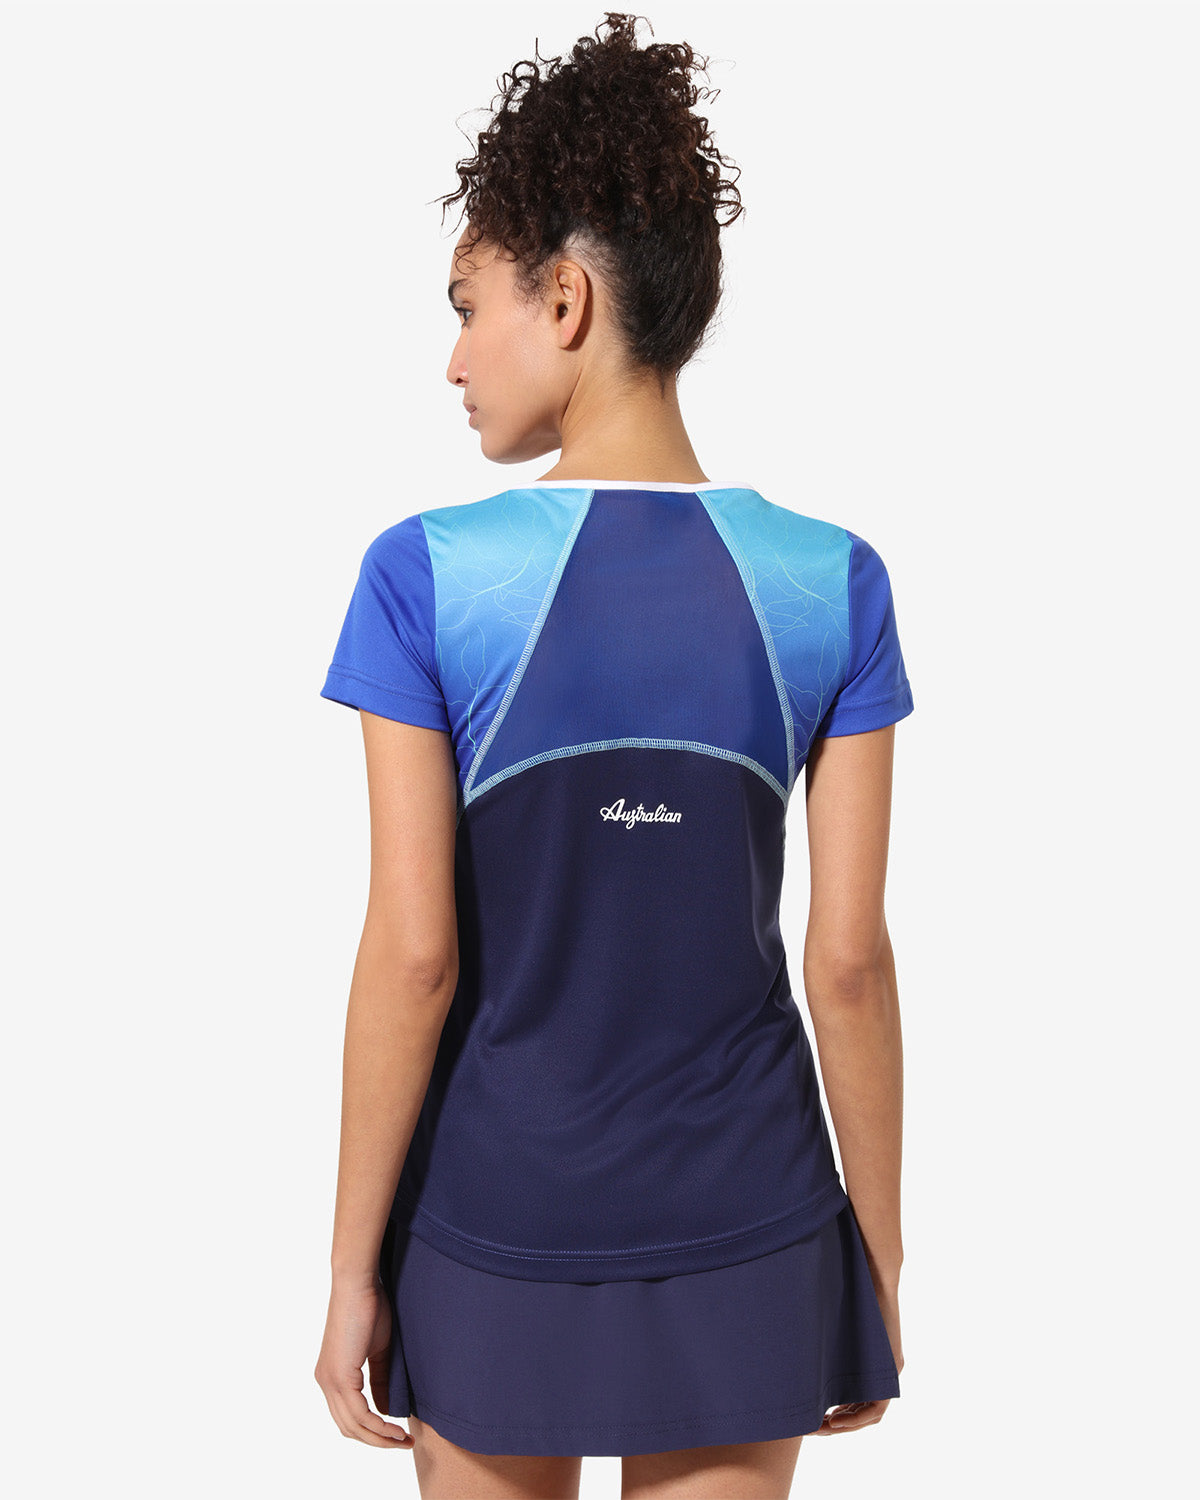 Grade T-shirt: Australian Tennis